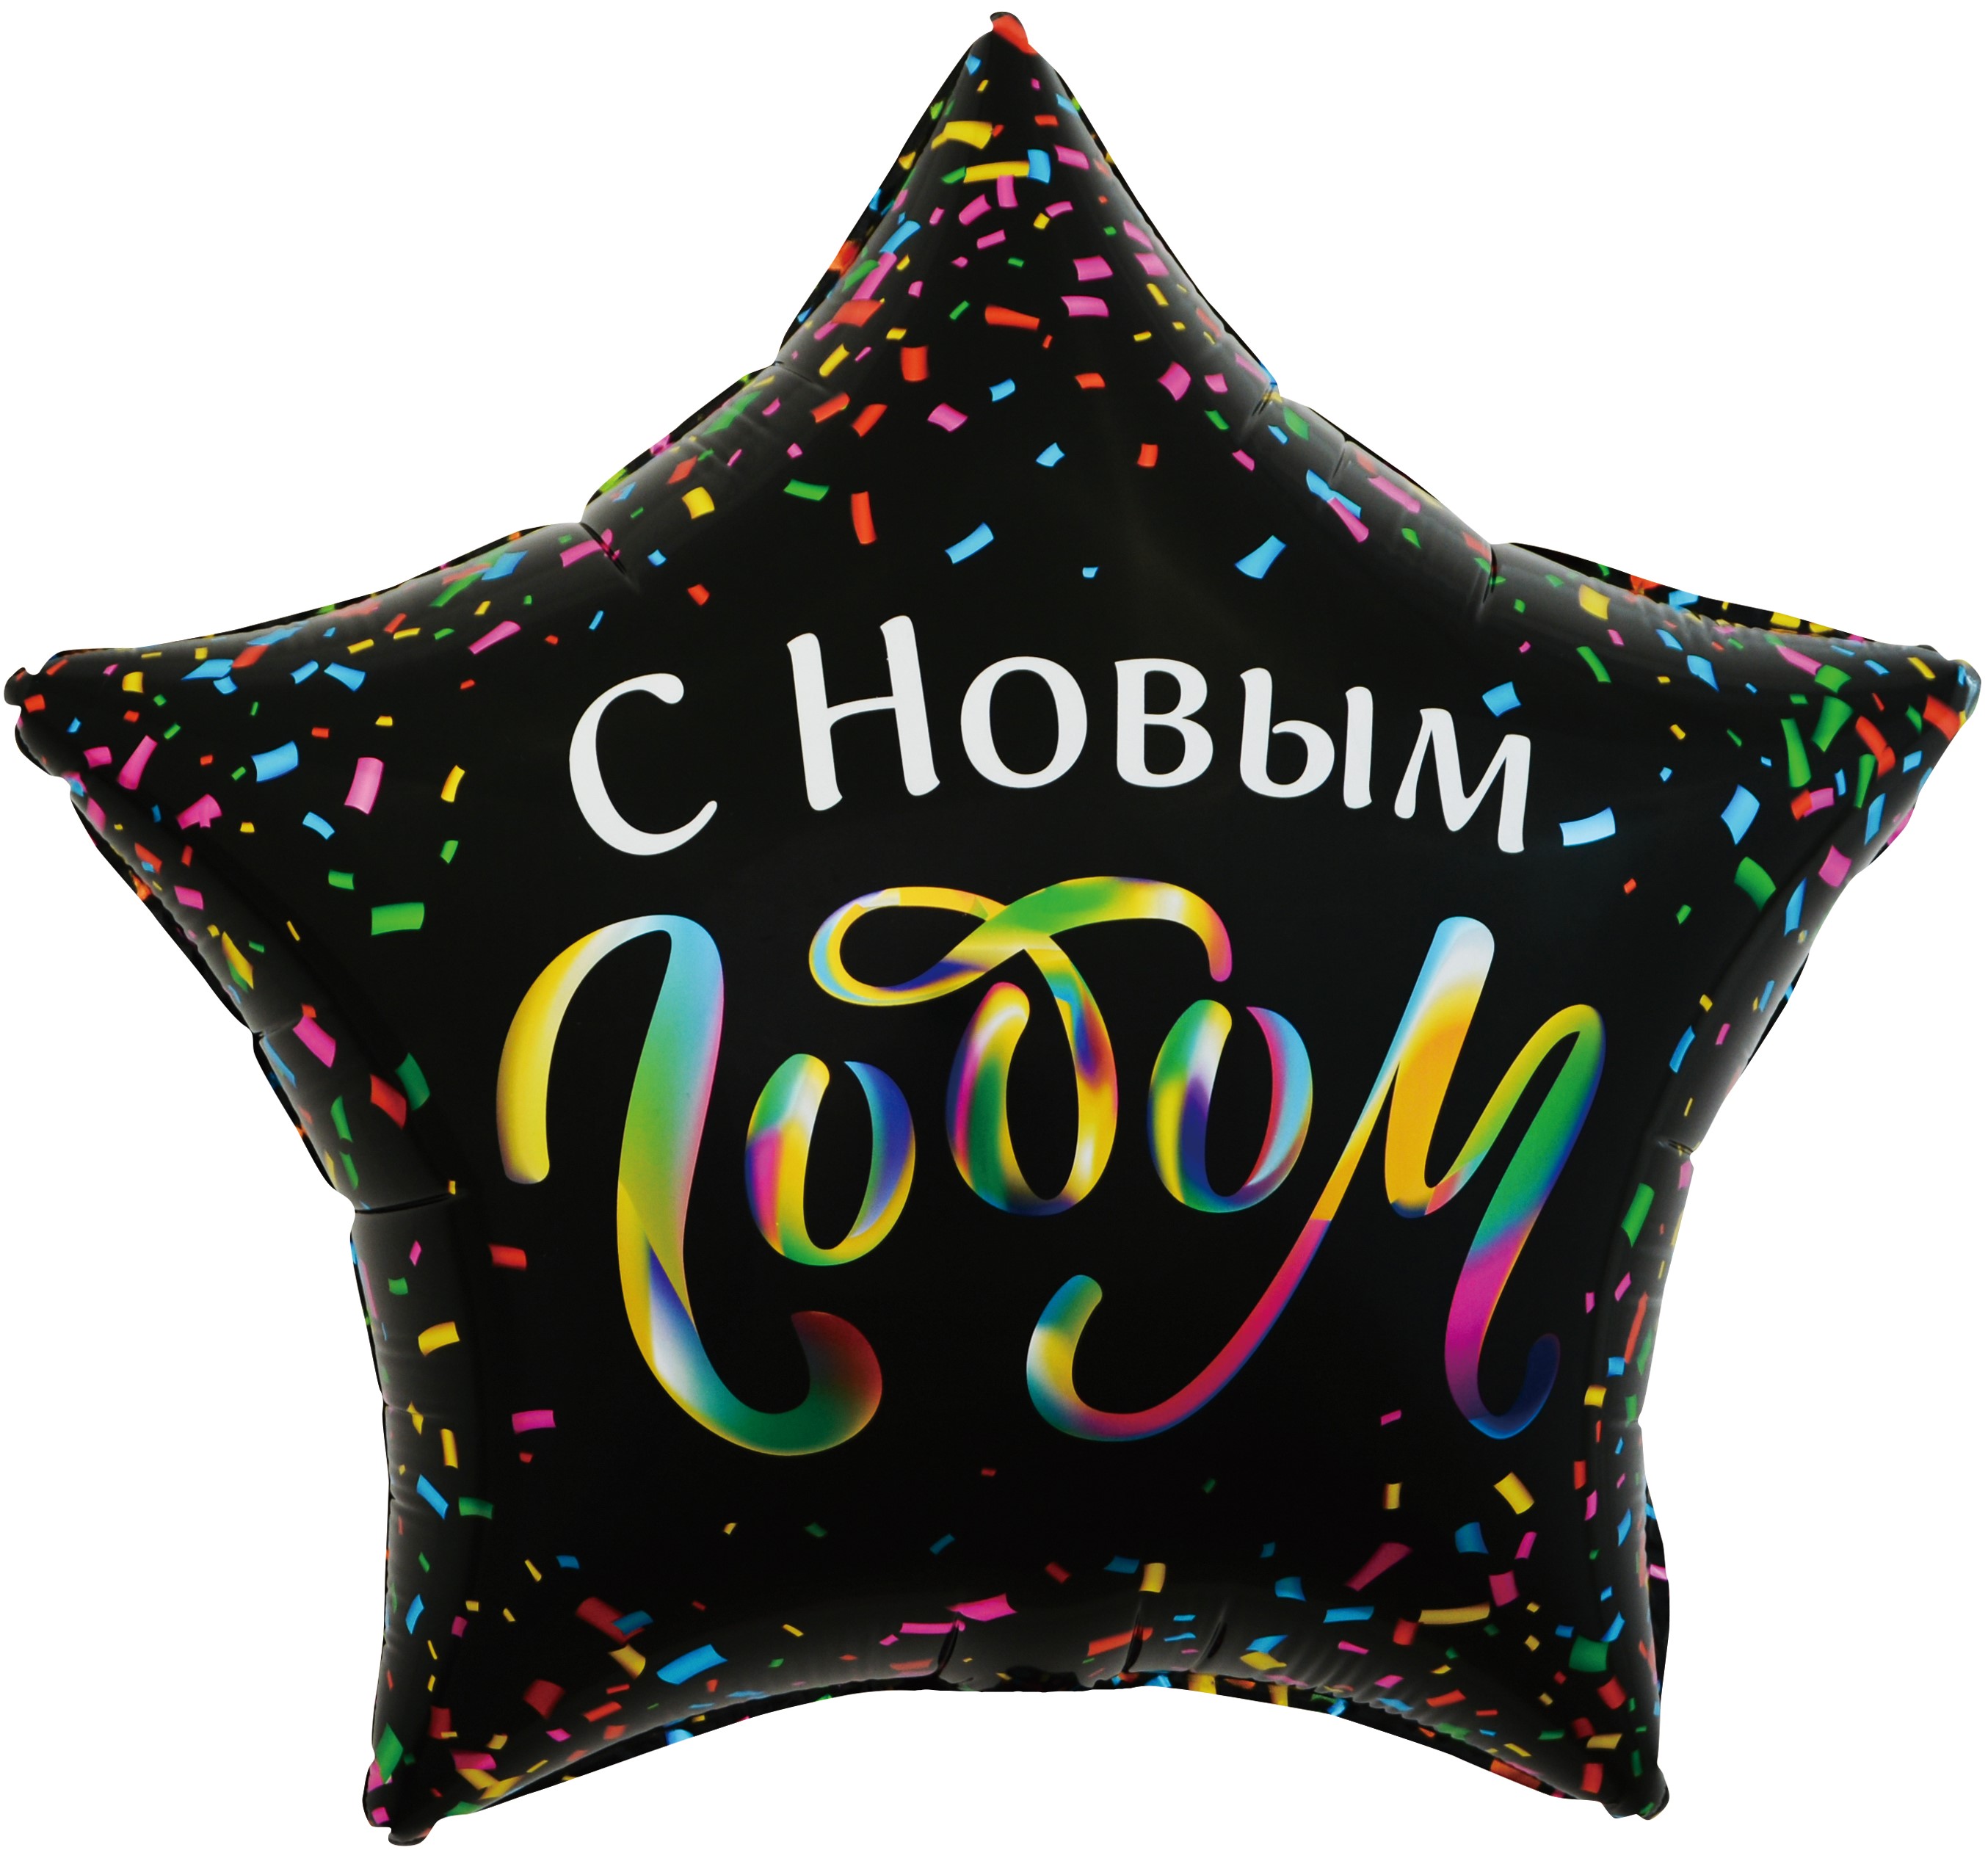 Шар Х 22" Звезда, С Новым Годом (разноцветное конфетти), Черный